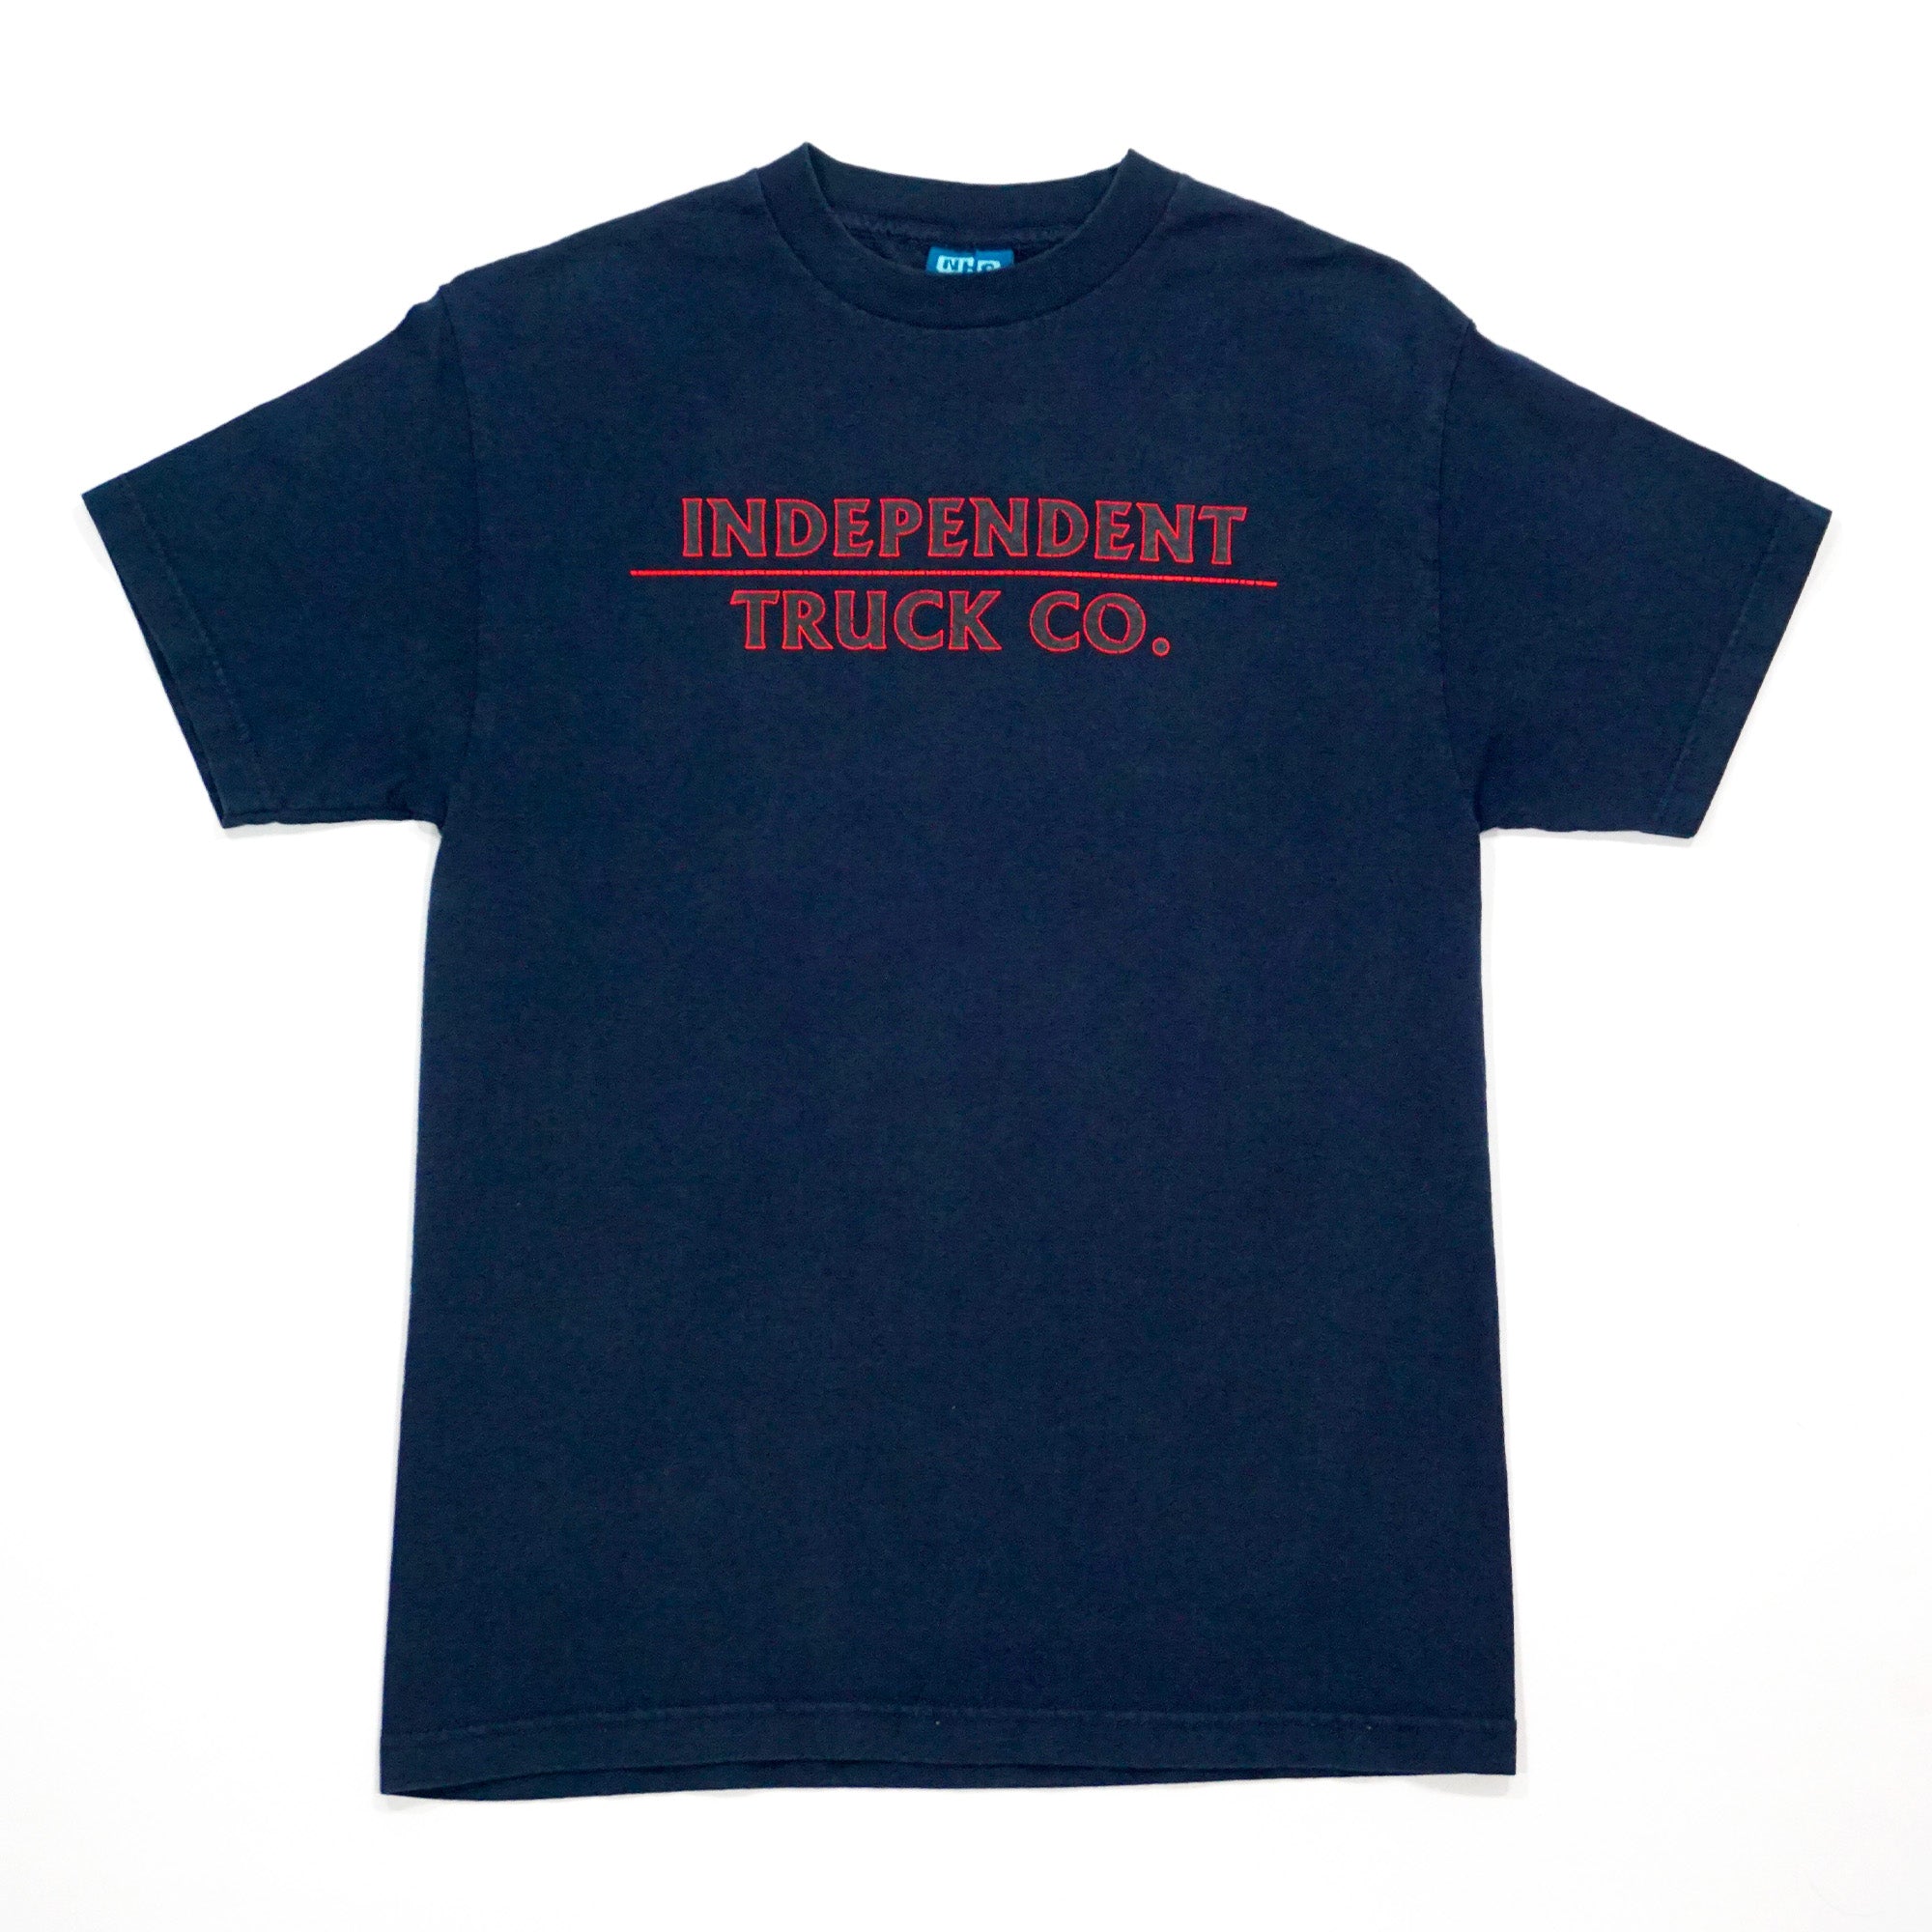 Independent Trucks - Iron Cross Shirt (M)